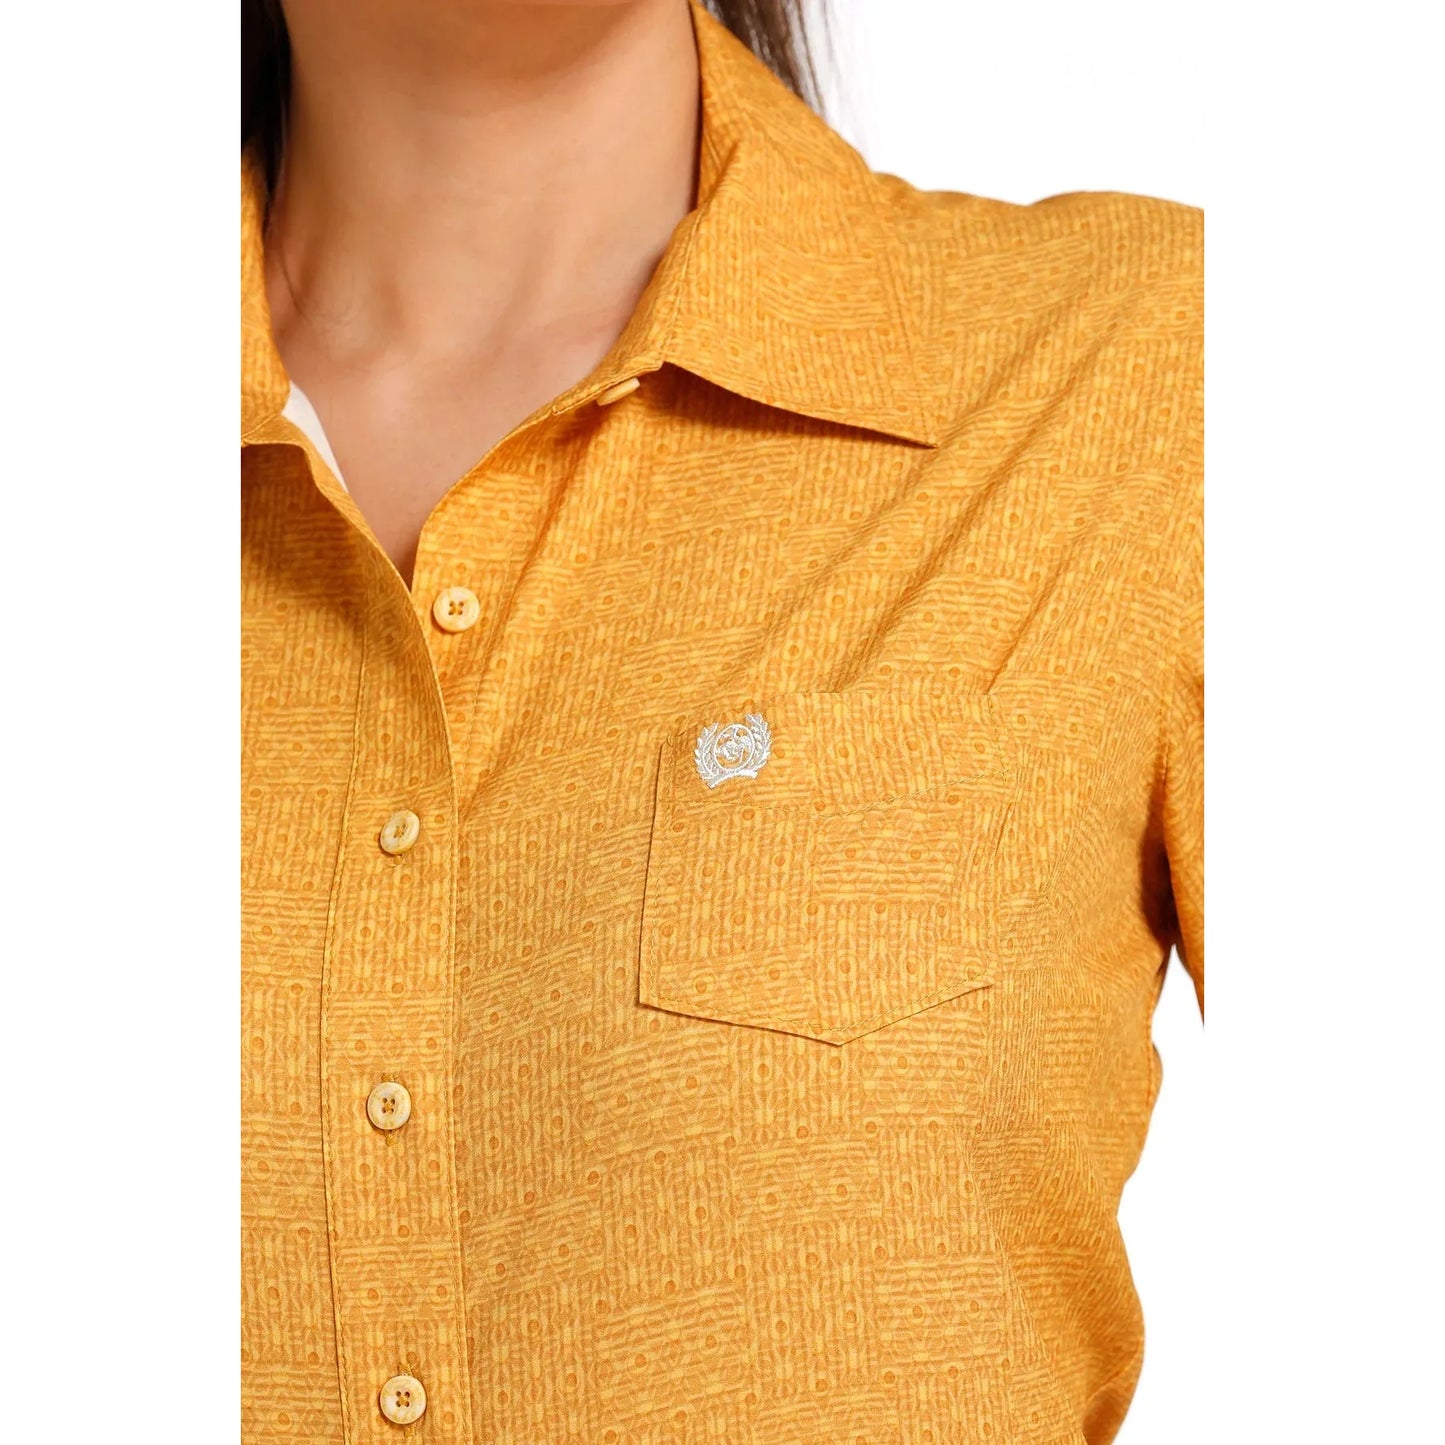 Cinch Women's Arenaflex Button-Down Western Shirt Gold